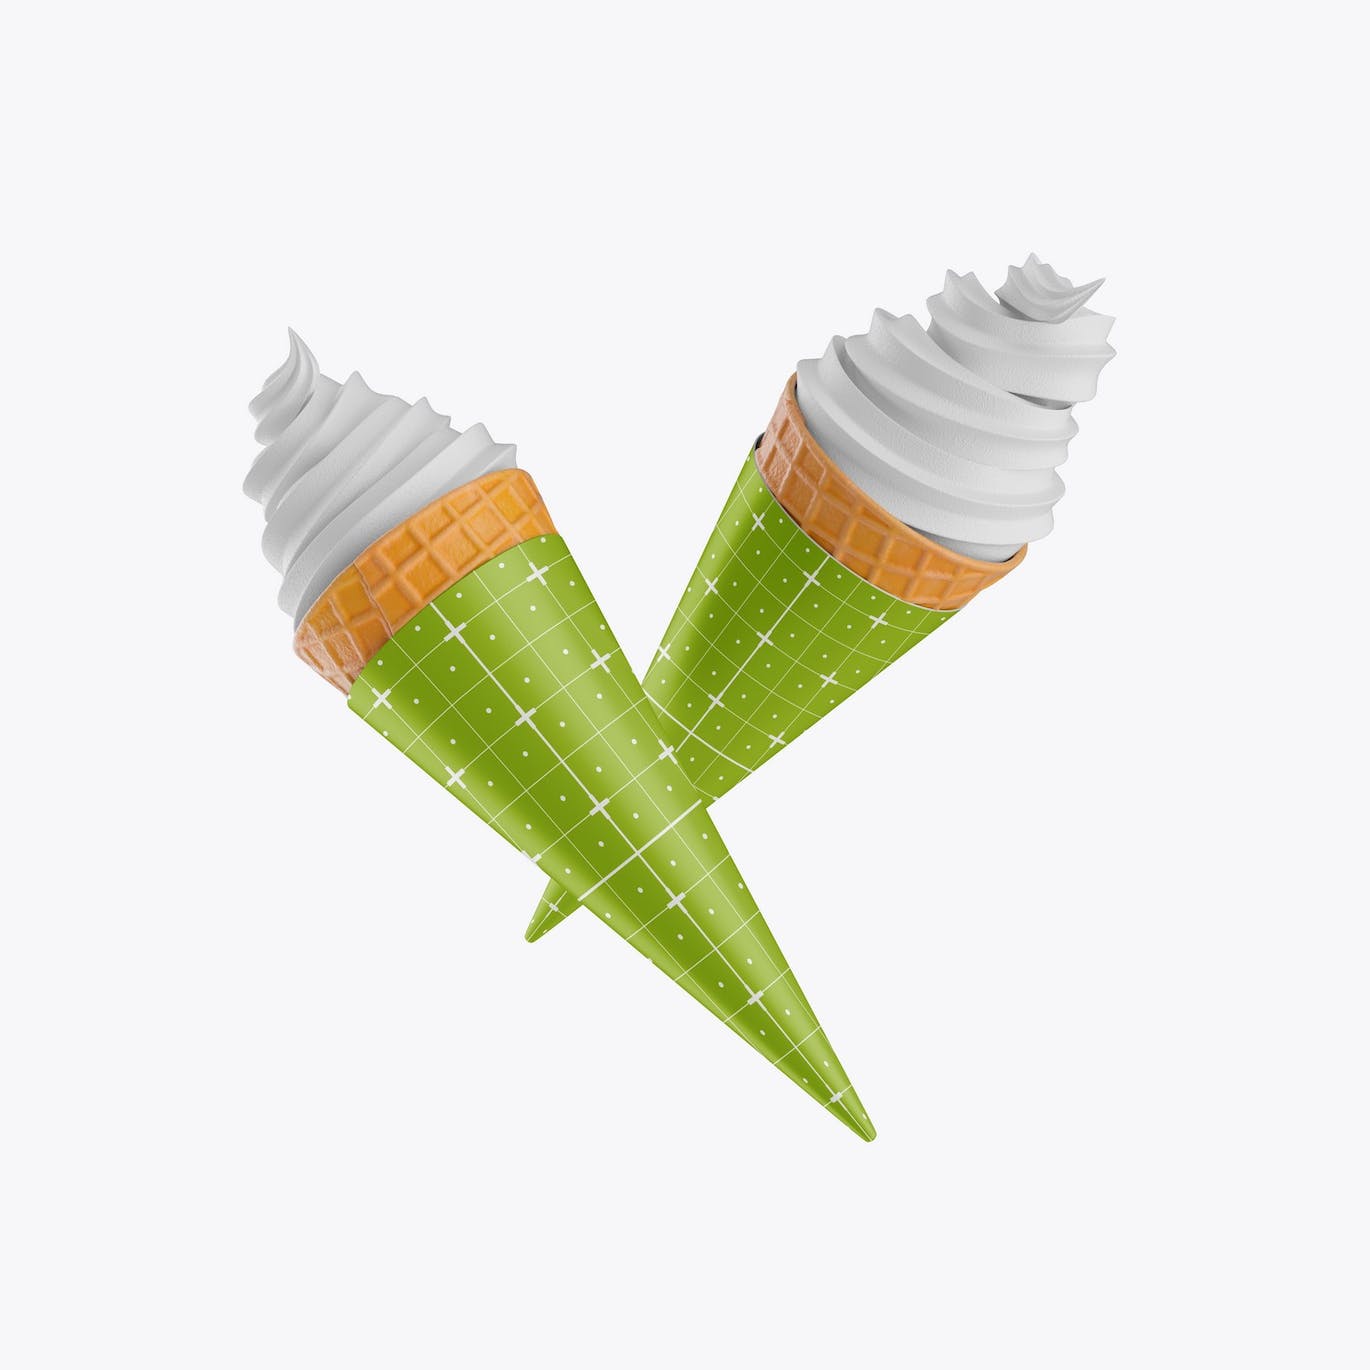 锥形冰淇淋包装设计样机 Soft Ice Cream Cone Mockup 样机素材 第2张